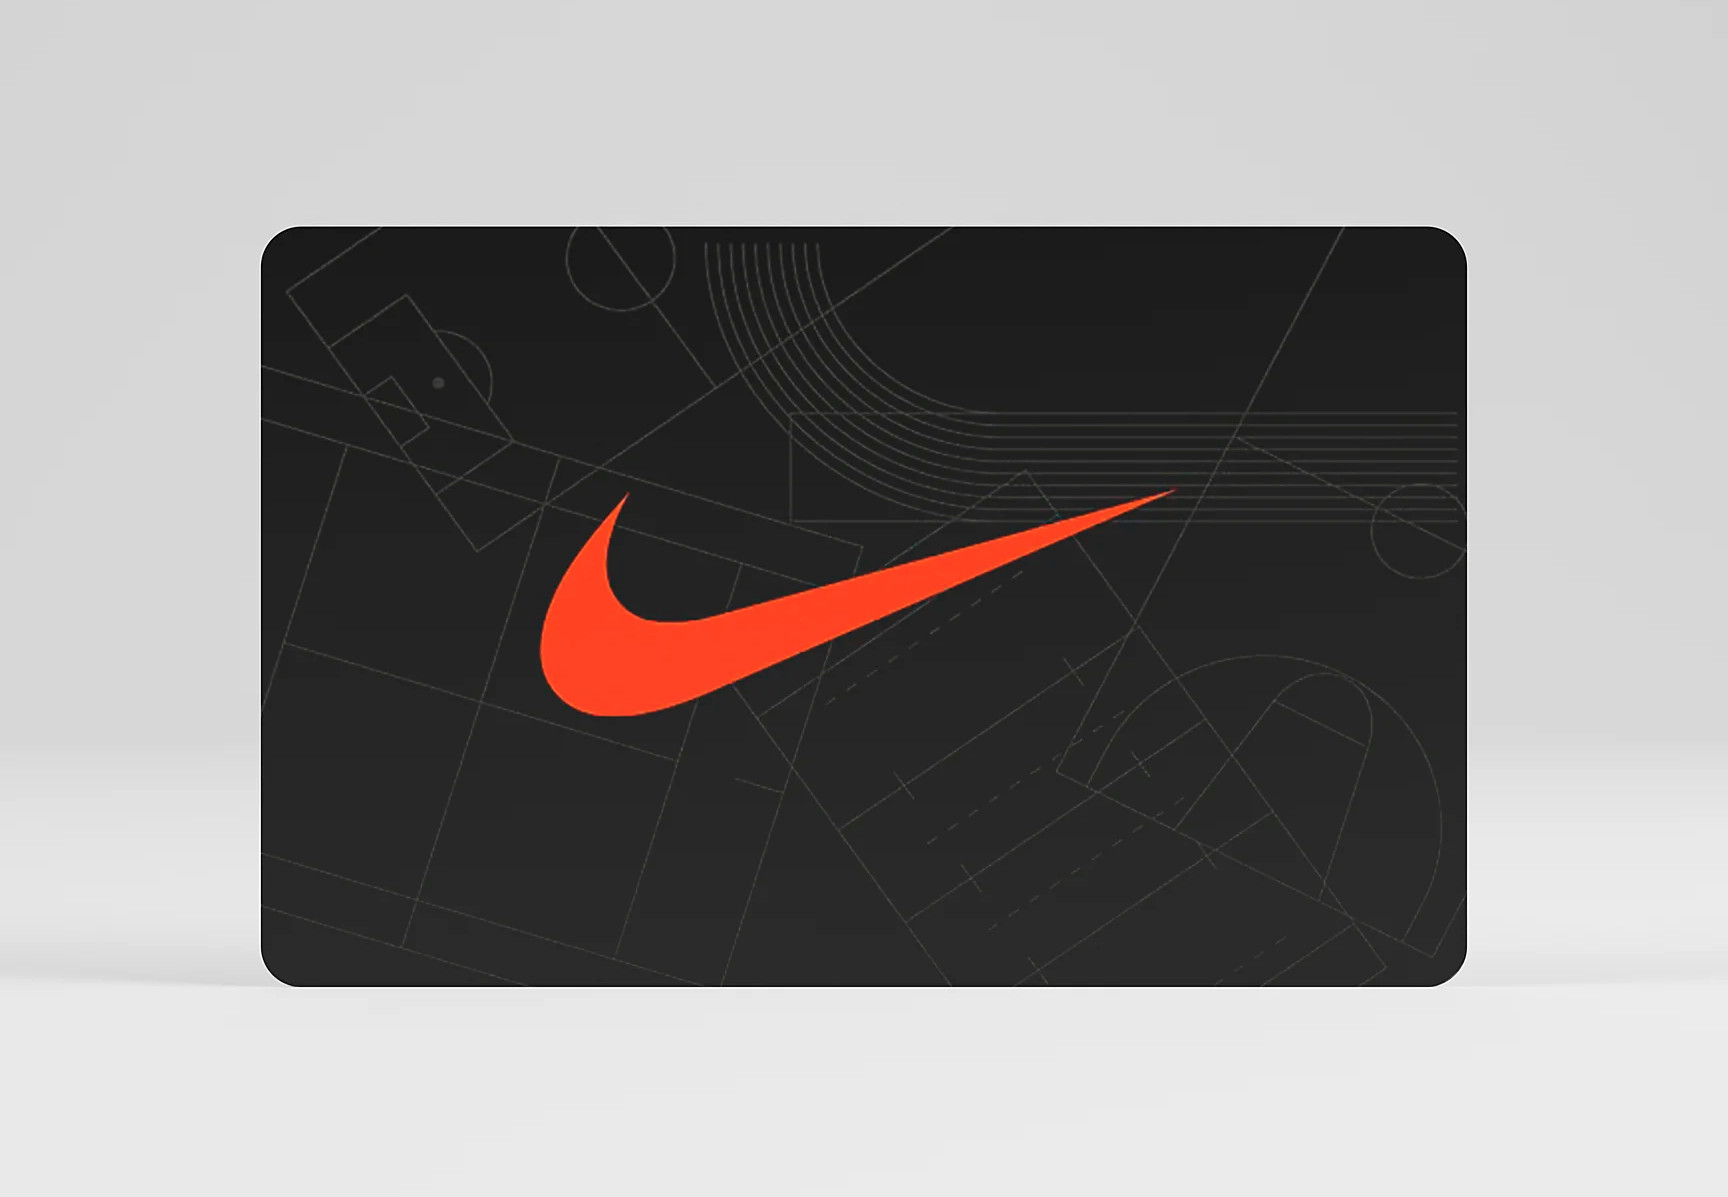 Nike $10 Gift Card US